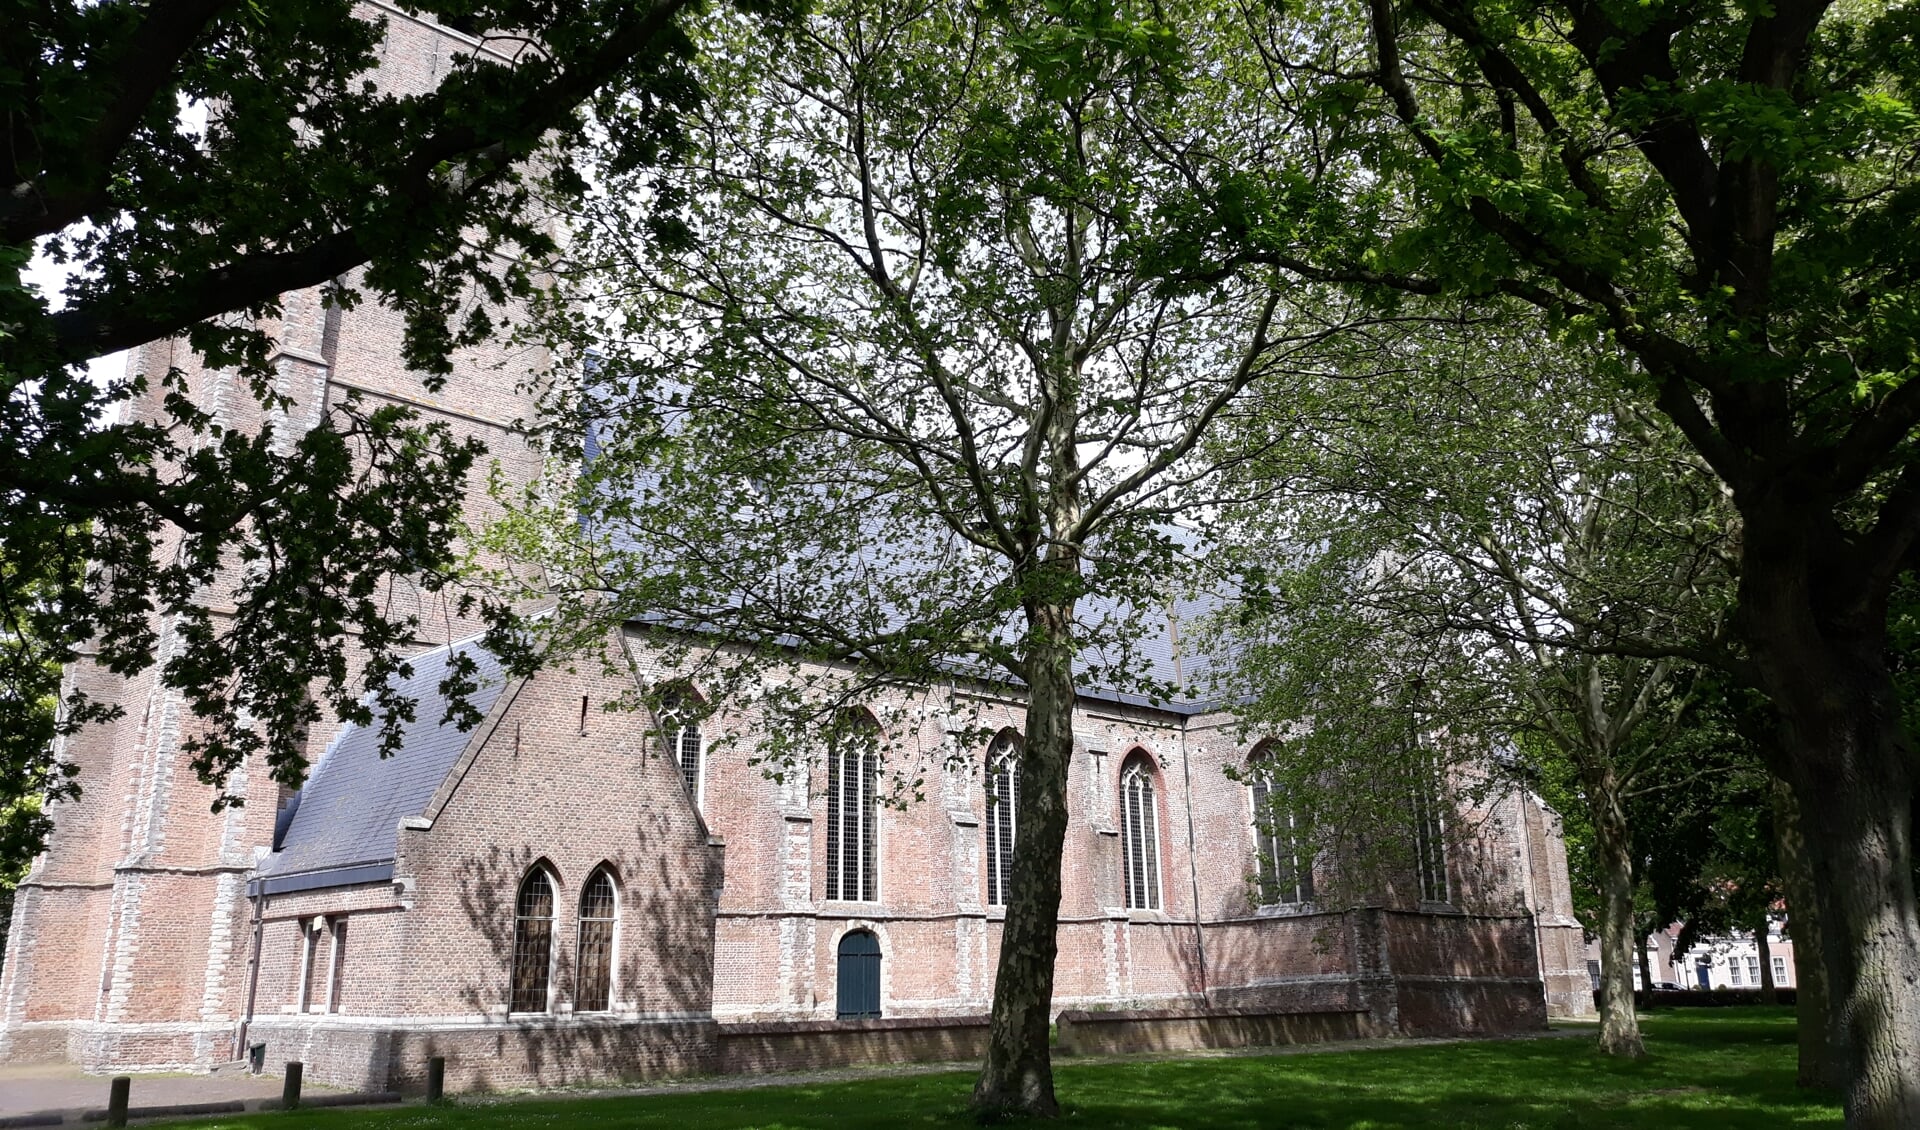 De hervormde kerk van Middelharnis is geopend op Open Monumentendag.